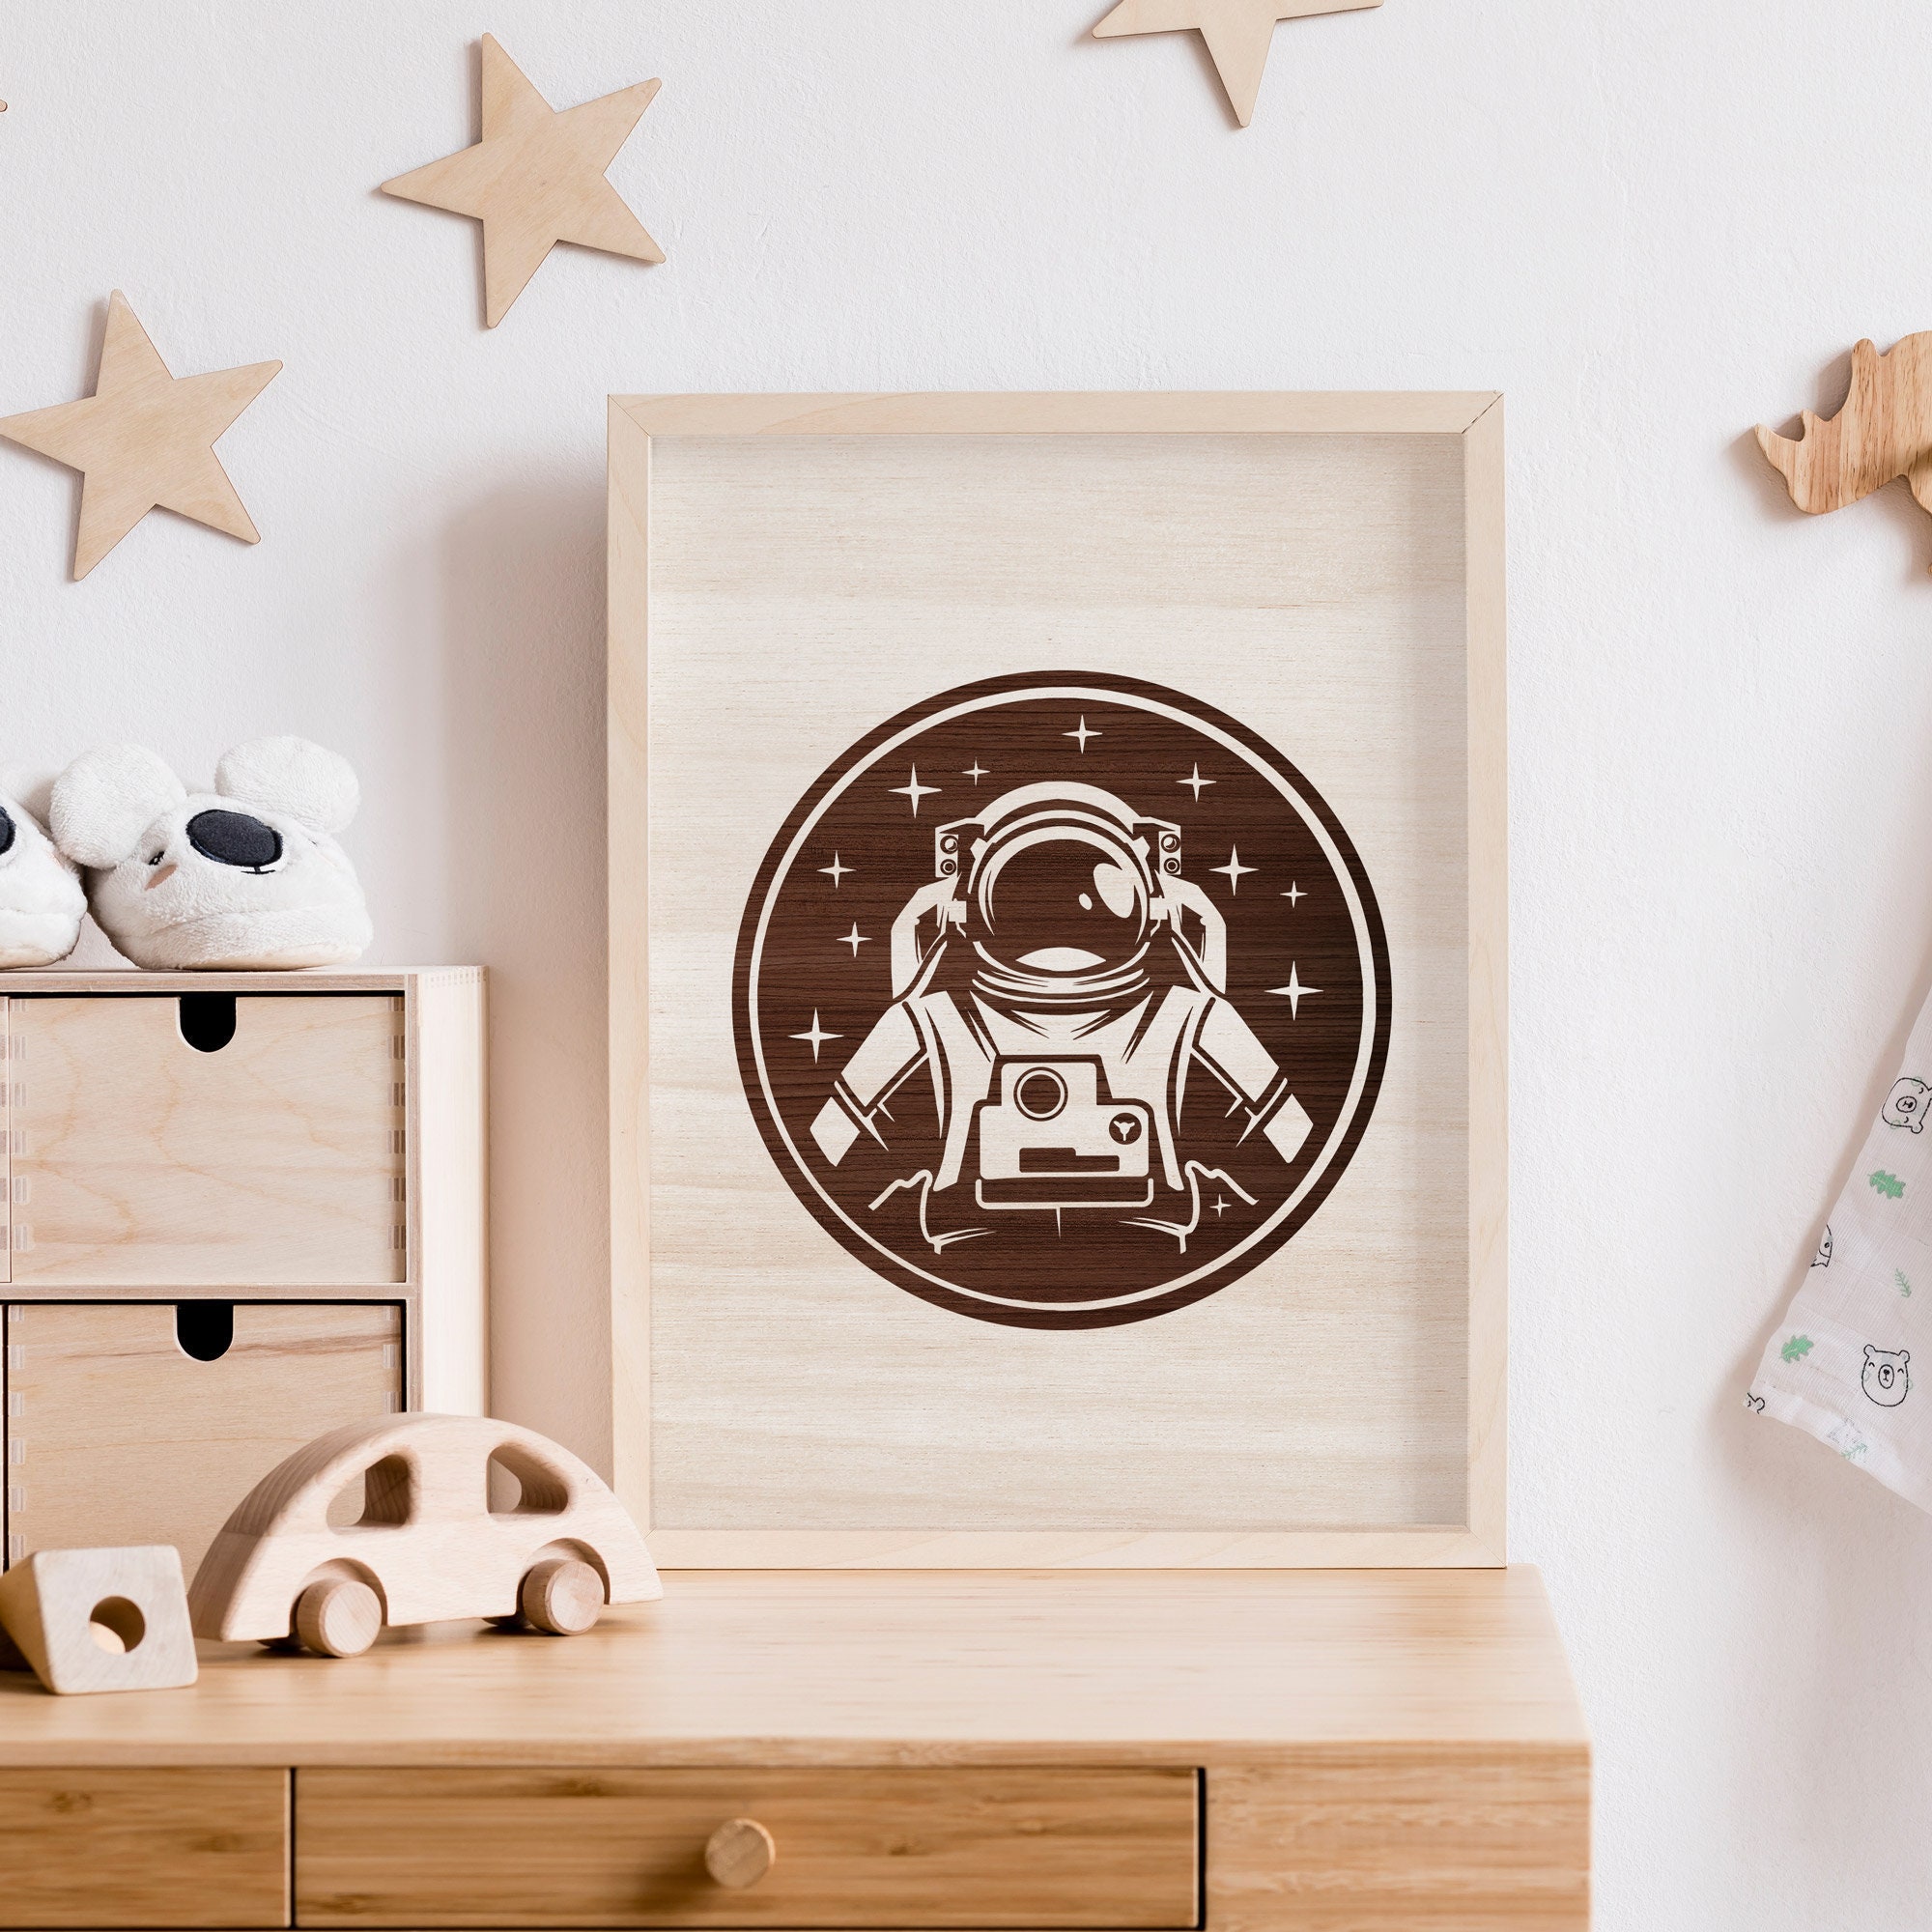 Tableau Astronaute en Bois/Gravure sur de Hêtre ou Okoumé Décoration Chambre Bébé et Enfant Astronom